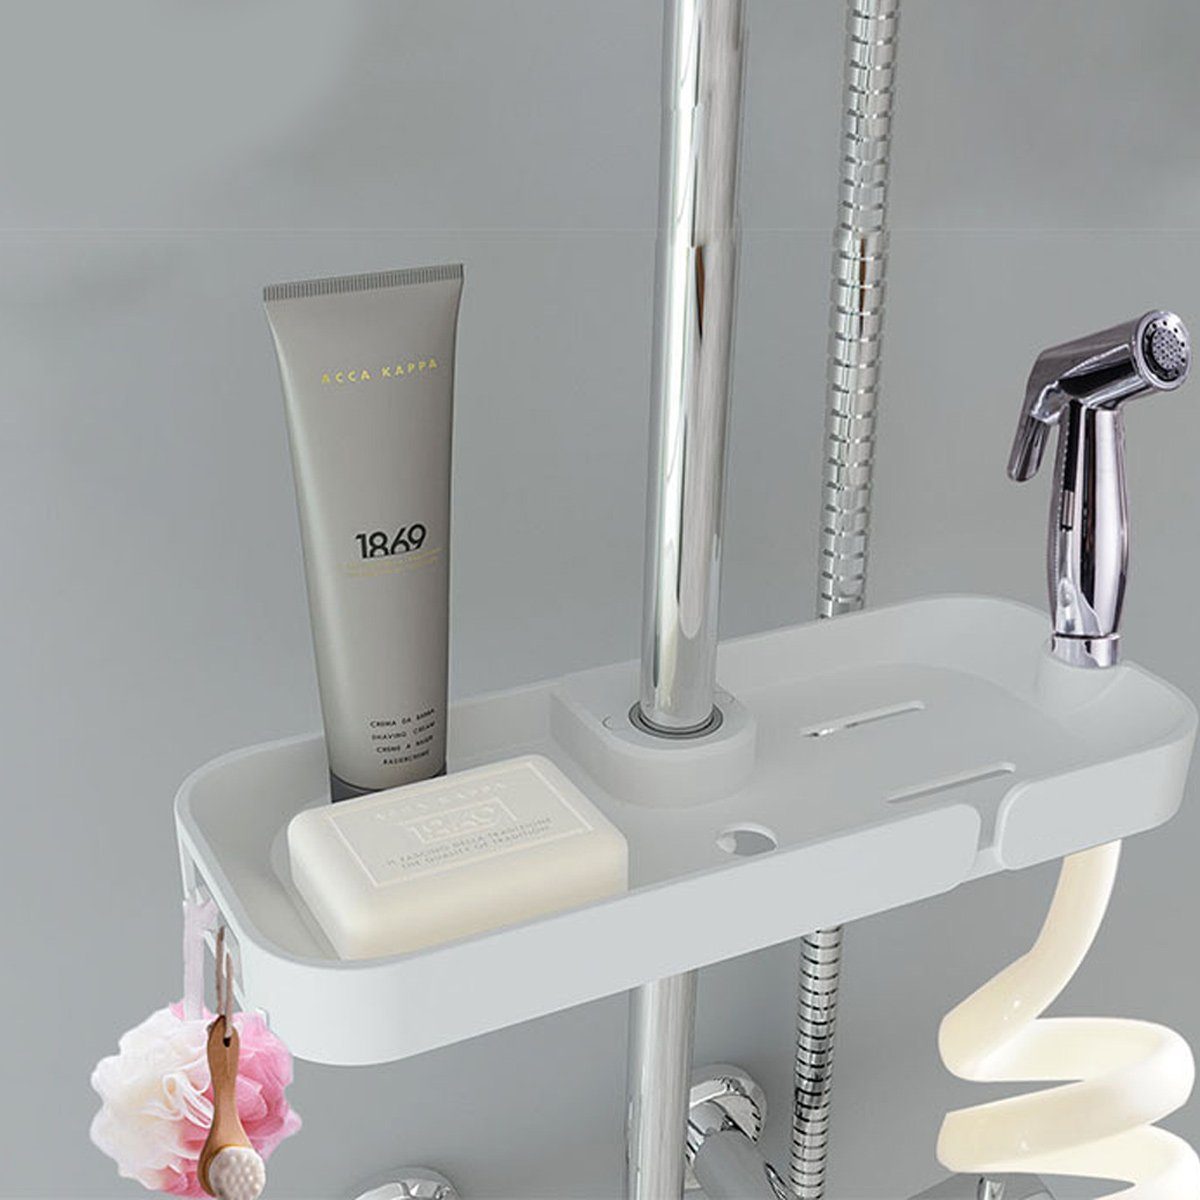 Jormftte Duschkorb Verstellbar Hängen Rack,mit zum Dusche Halter Duschablage Weiß Dusche